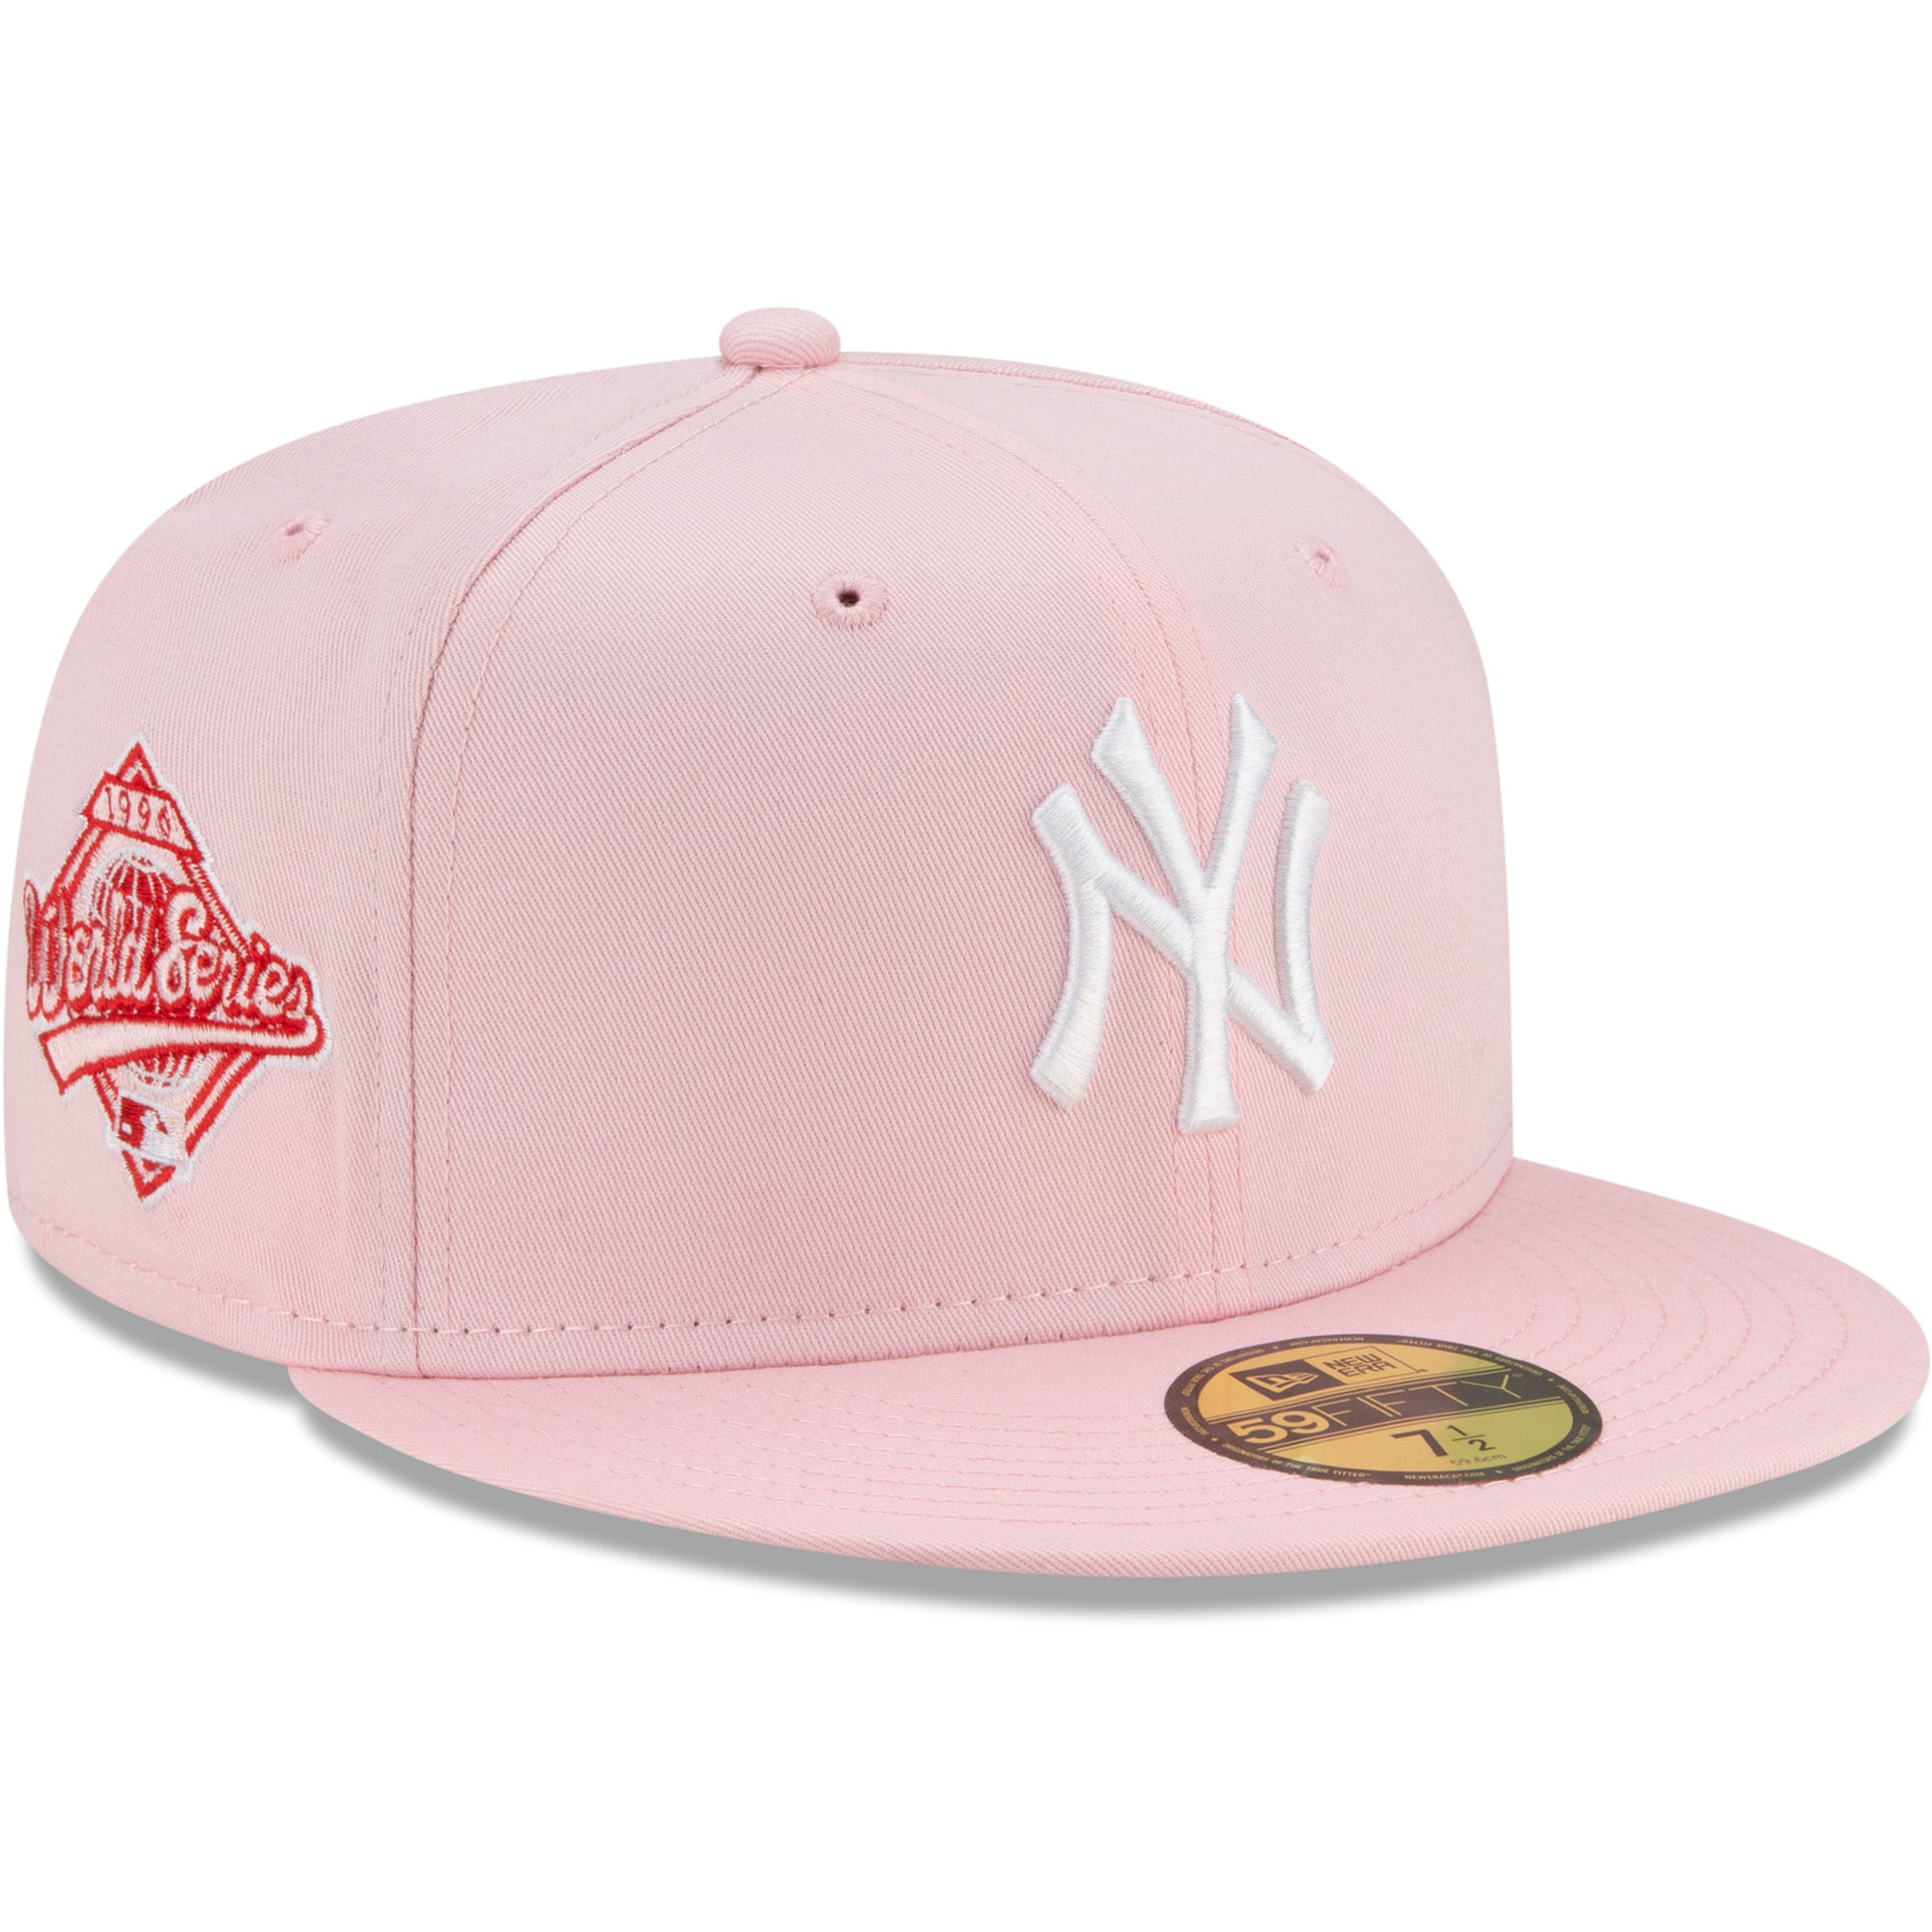 New Era 9Fifty Snapback KIDS Cap Youth NY Yankees pink 